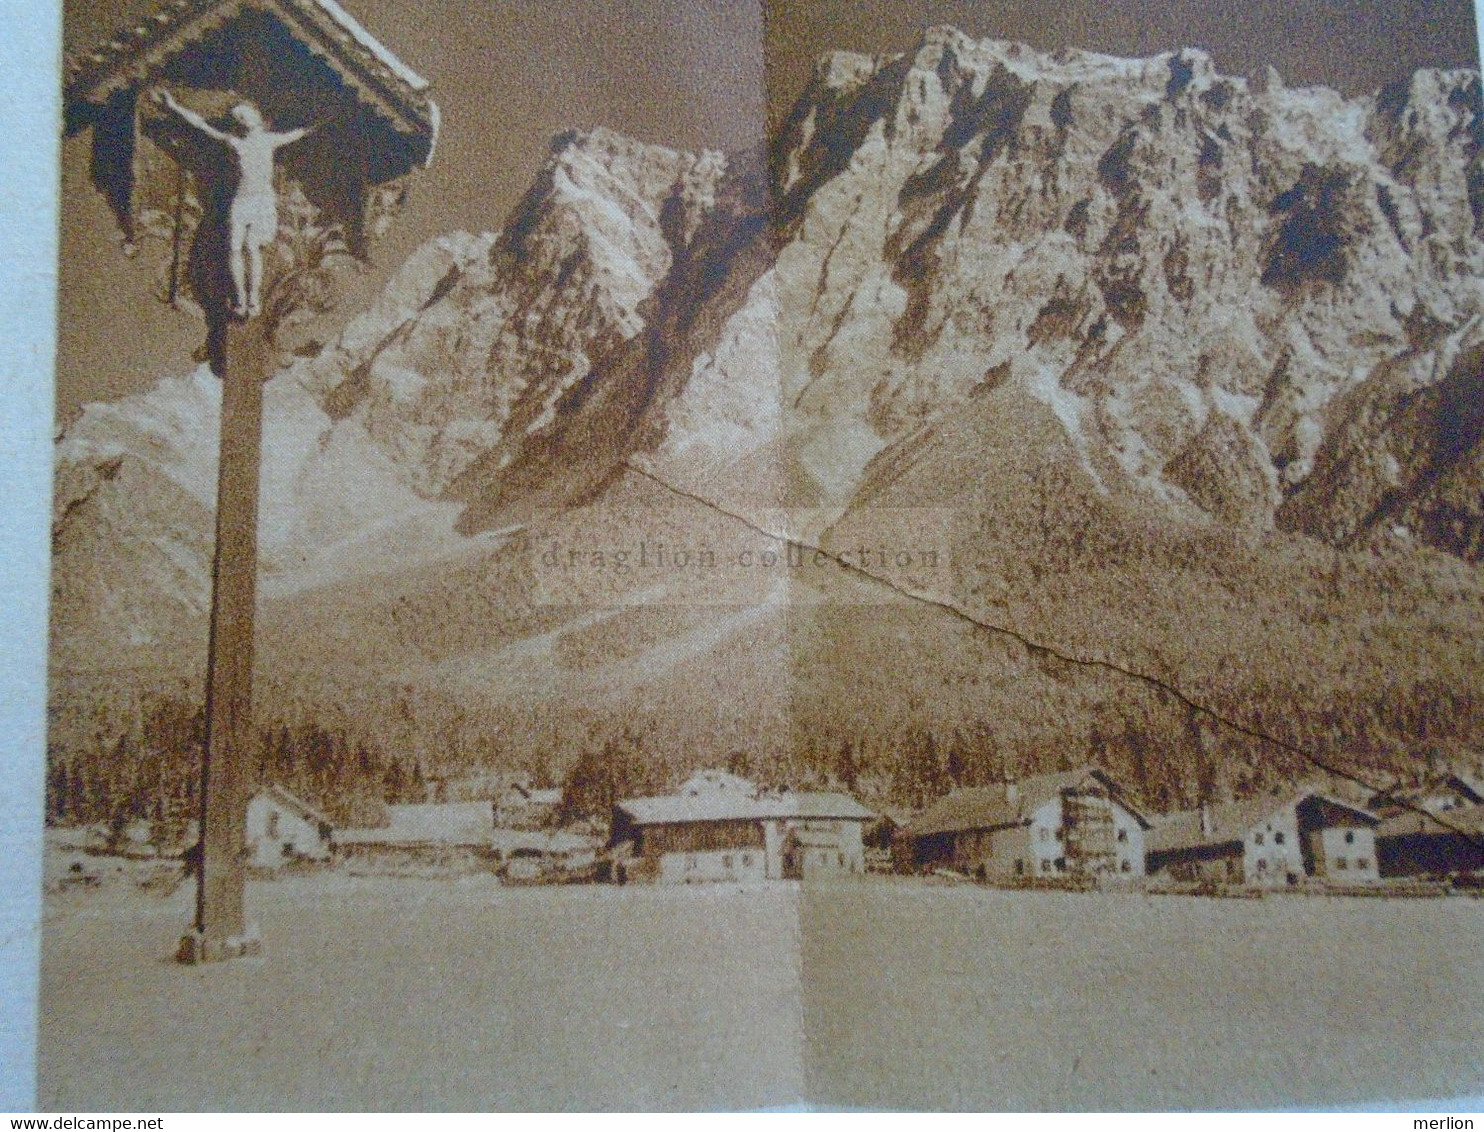 E0260  Tourism Brochure  EHRWALD  - Das Zugspitzdorf  in  TIROL  Österreich ca 1930's  Zugspitzbahn